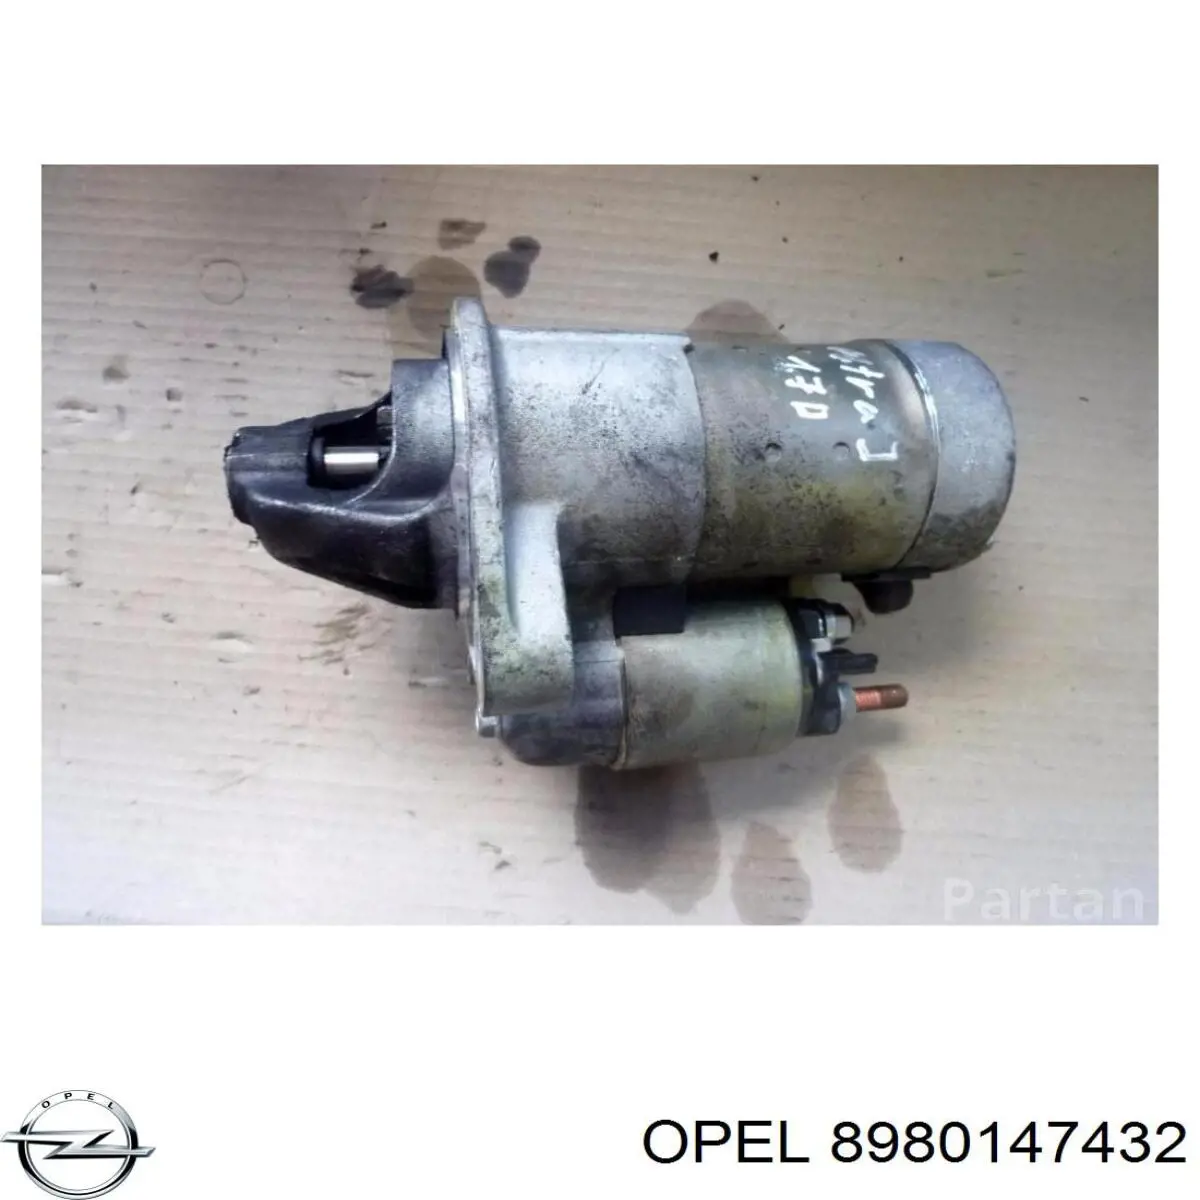 8980147432 Opel motor de arranque